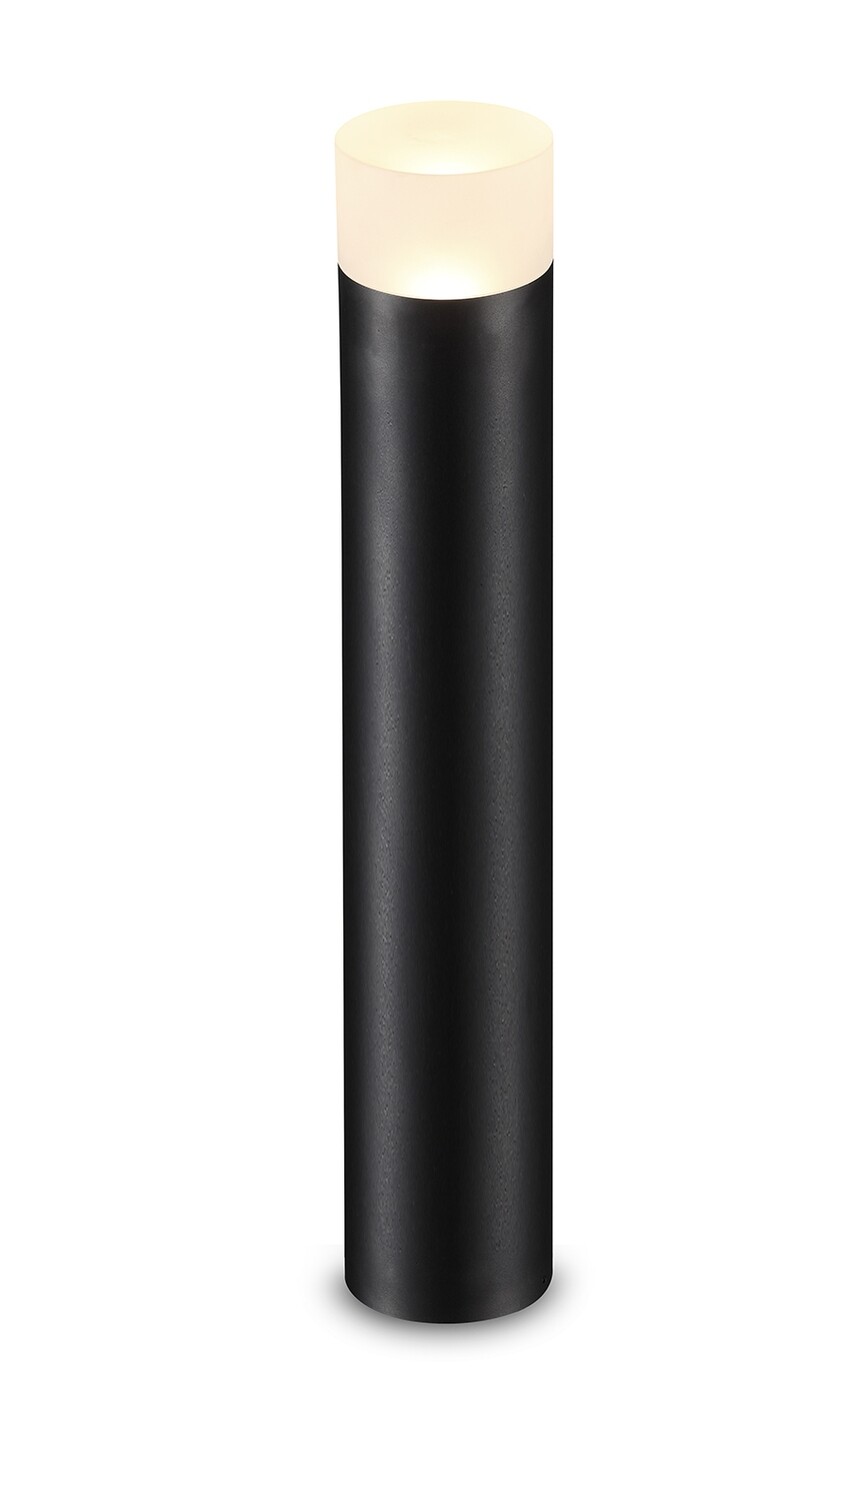 ProLuce® Pollerleuchte TUBE/61 9W 3000K 800lm, Alu/Acryl schwarz D102x610 cm IP65